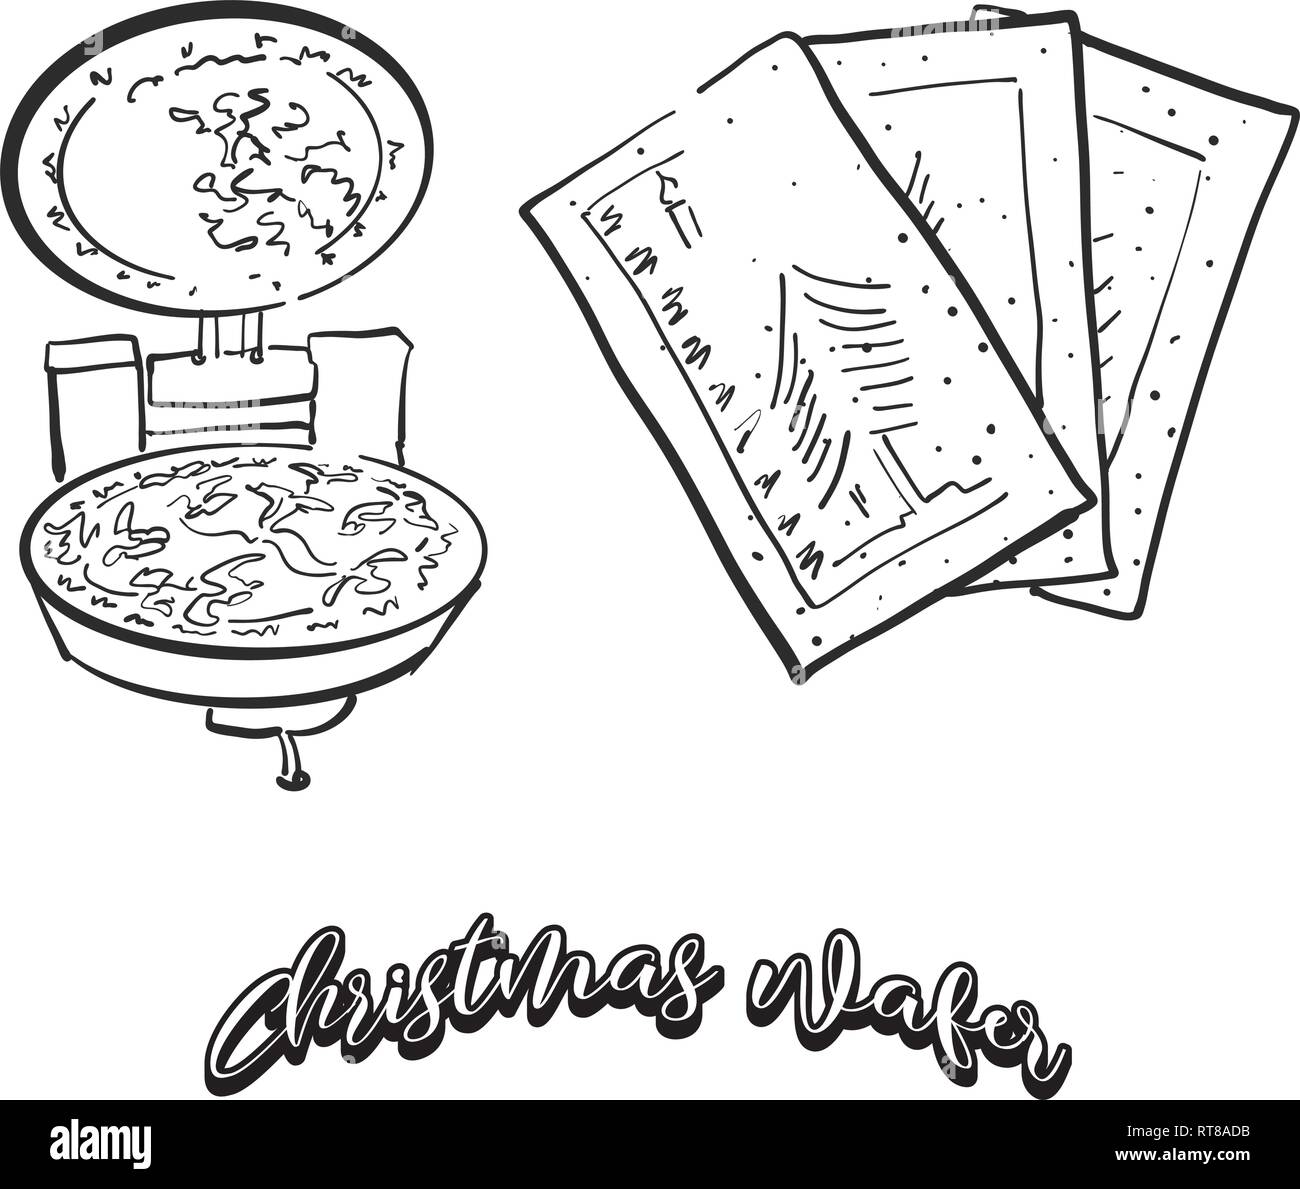 Hand gezeichnete Skizze von Weihnachten wafer Brot. Vektor Zeichnung von knusprigem Brot essen, in der Regel in Osteuropa bekannt. Brot Abbildung Serie. Stock Vektor